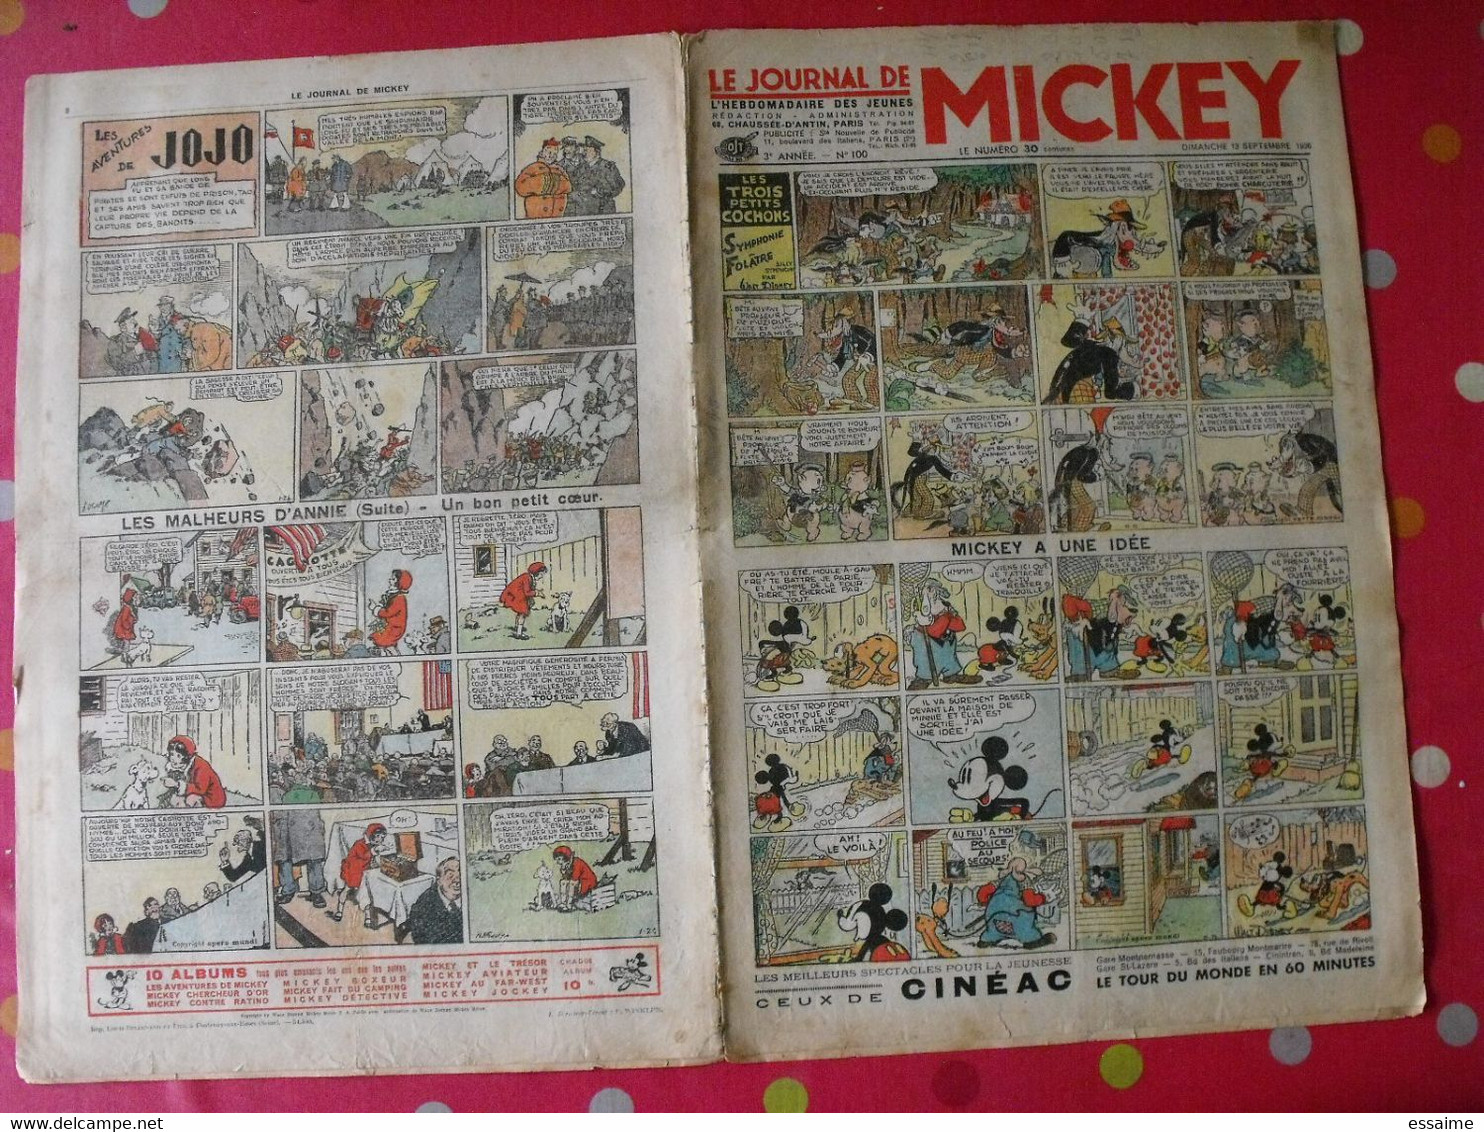 5 n° du journal de Mickey 1936-1937